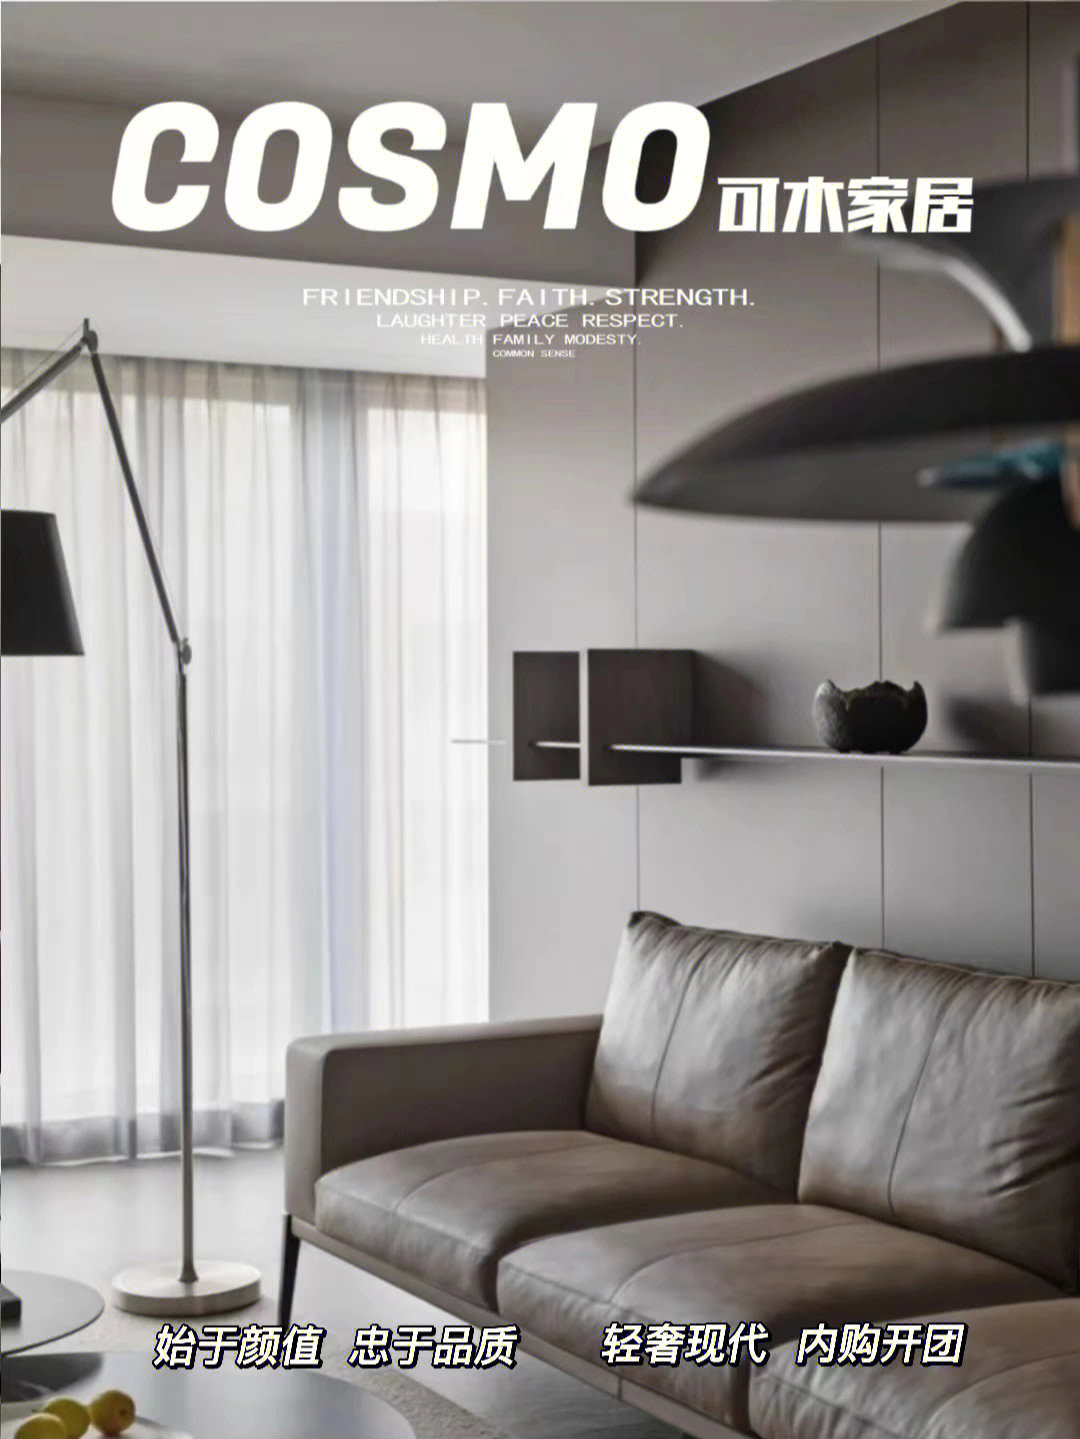 Cosmo可木家具价位图片